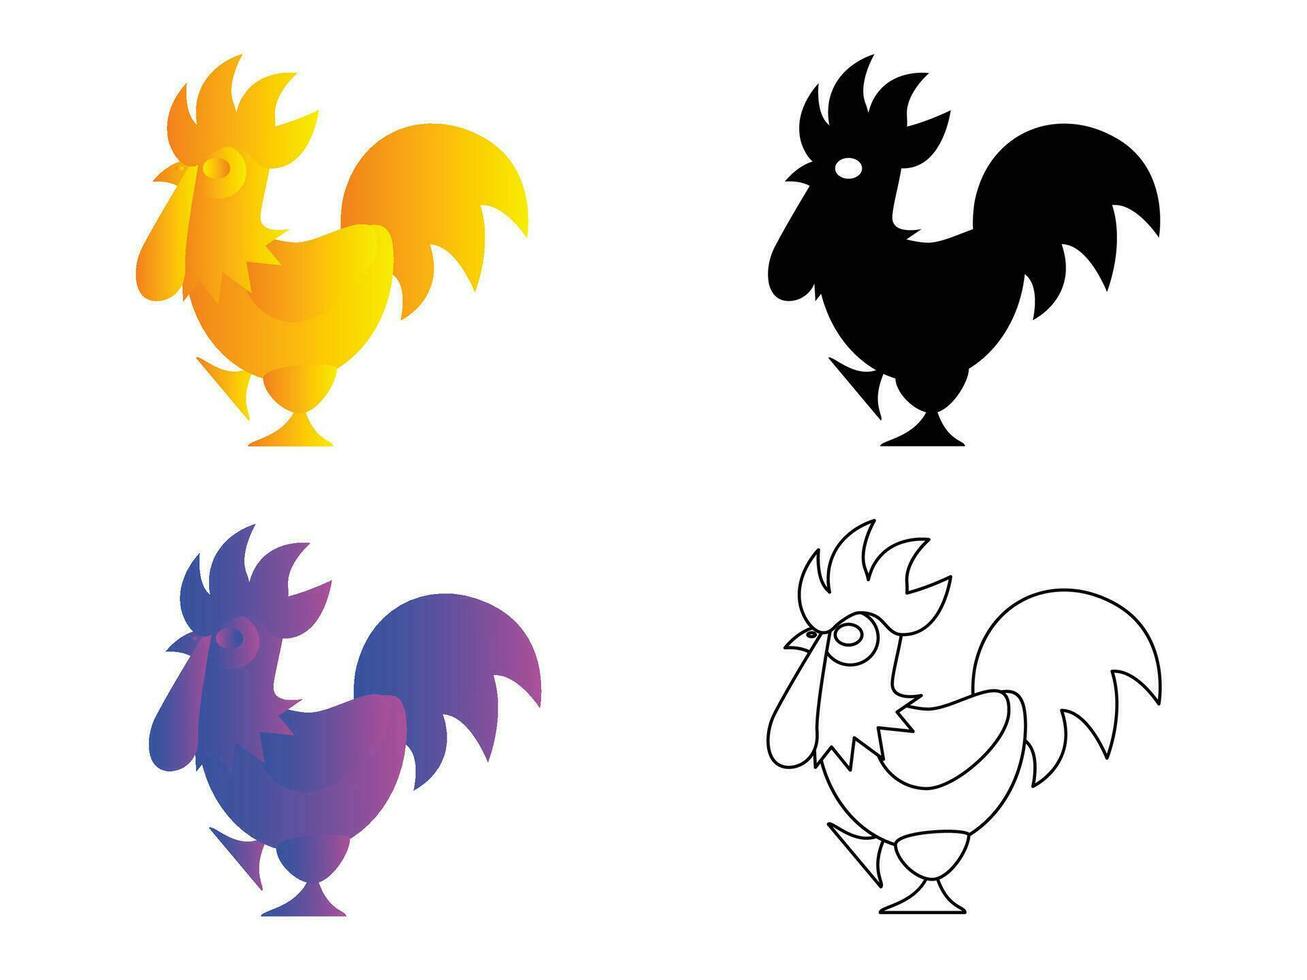 ritad för hand färgrik och svart kyckling illustration vektor